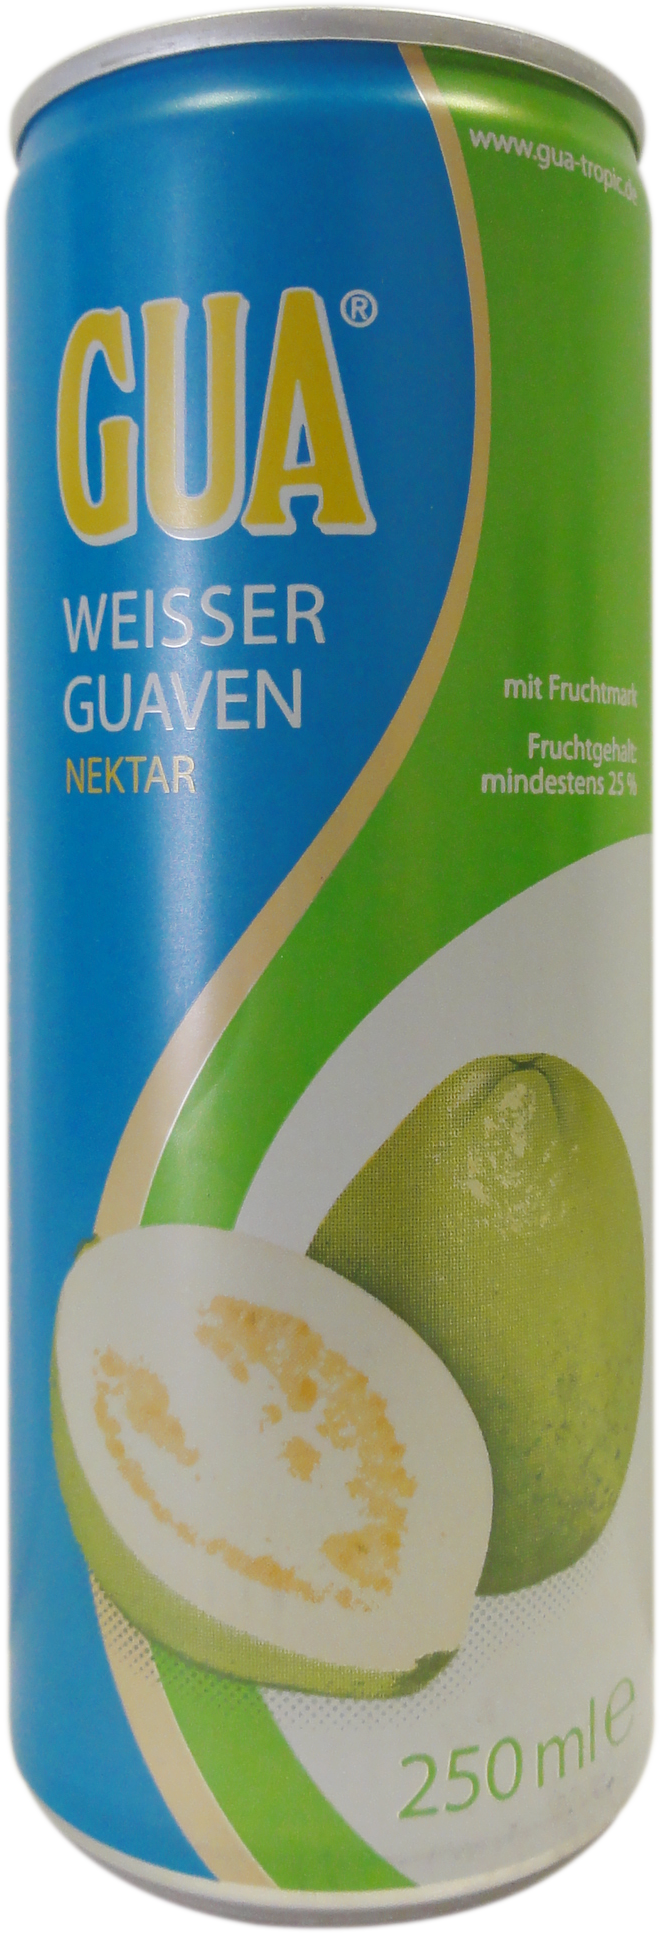 Drink Guavenektar Gua 24x250ml